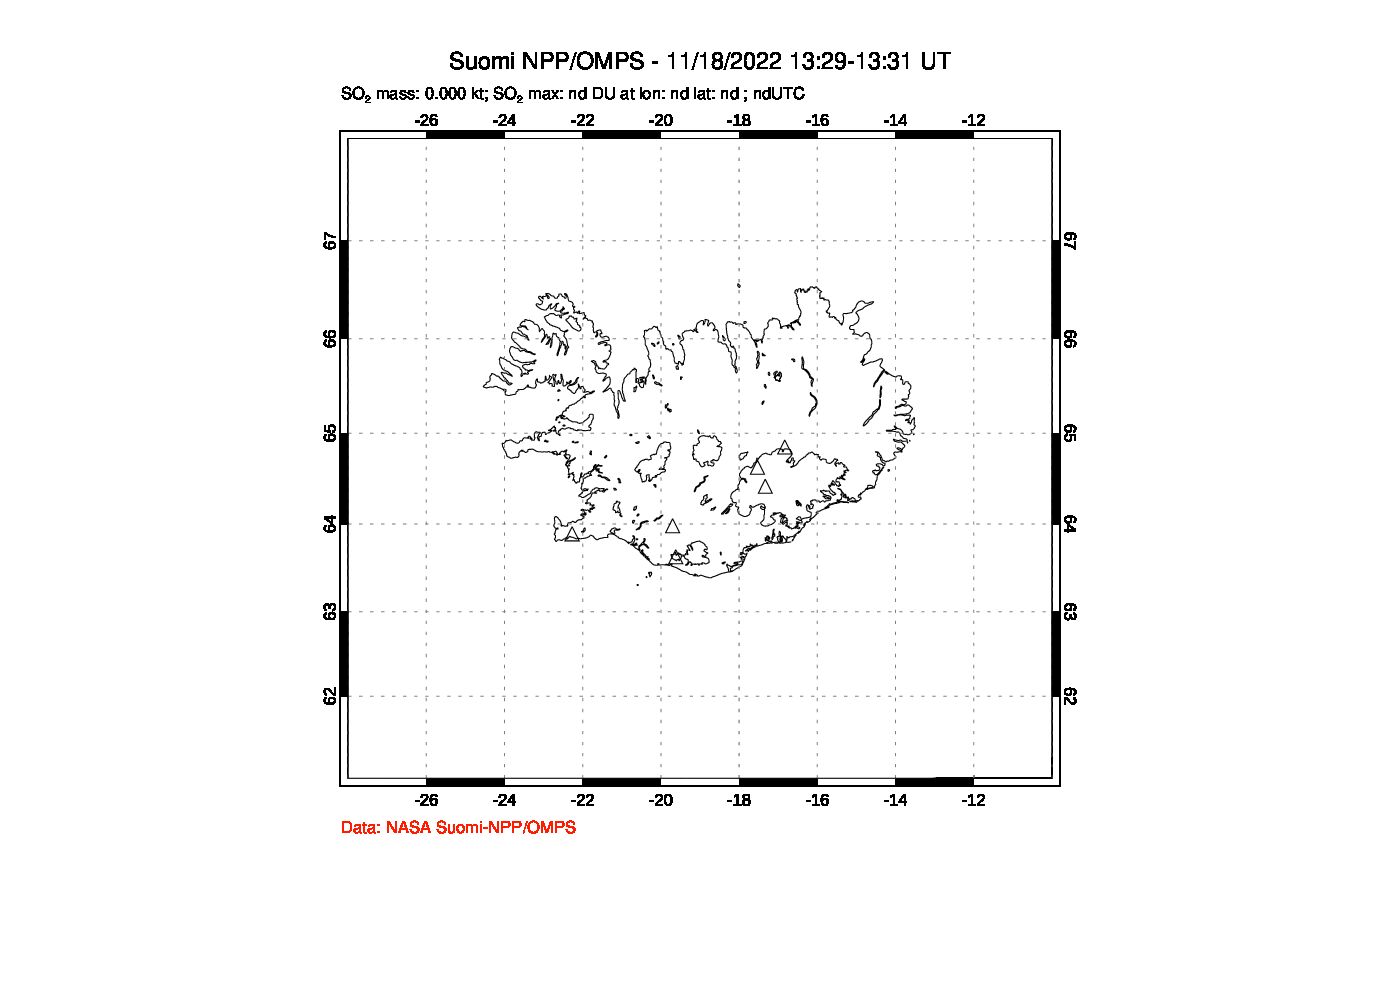 A sulfur dioxide image over Iceland on Nov 18, 2022.